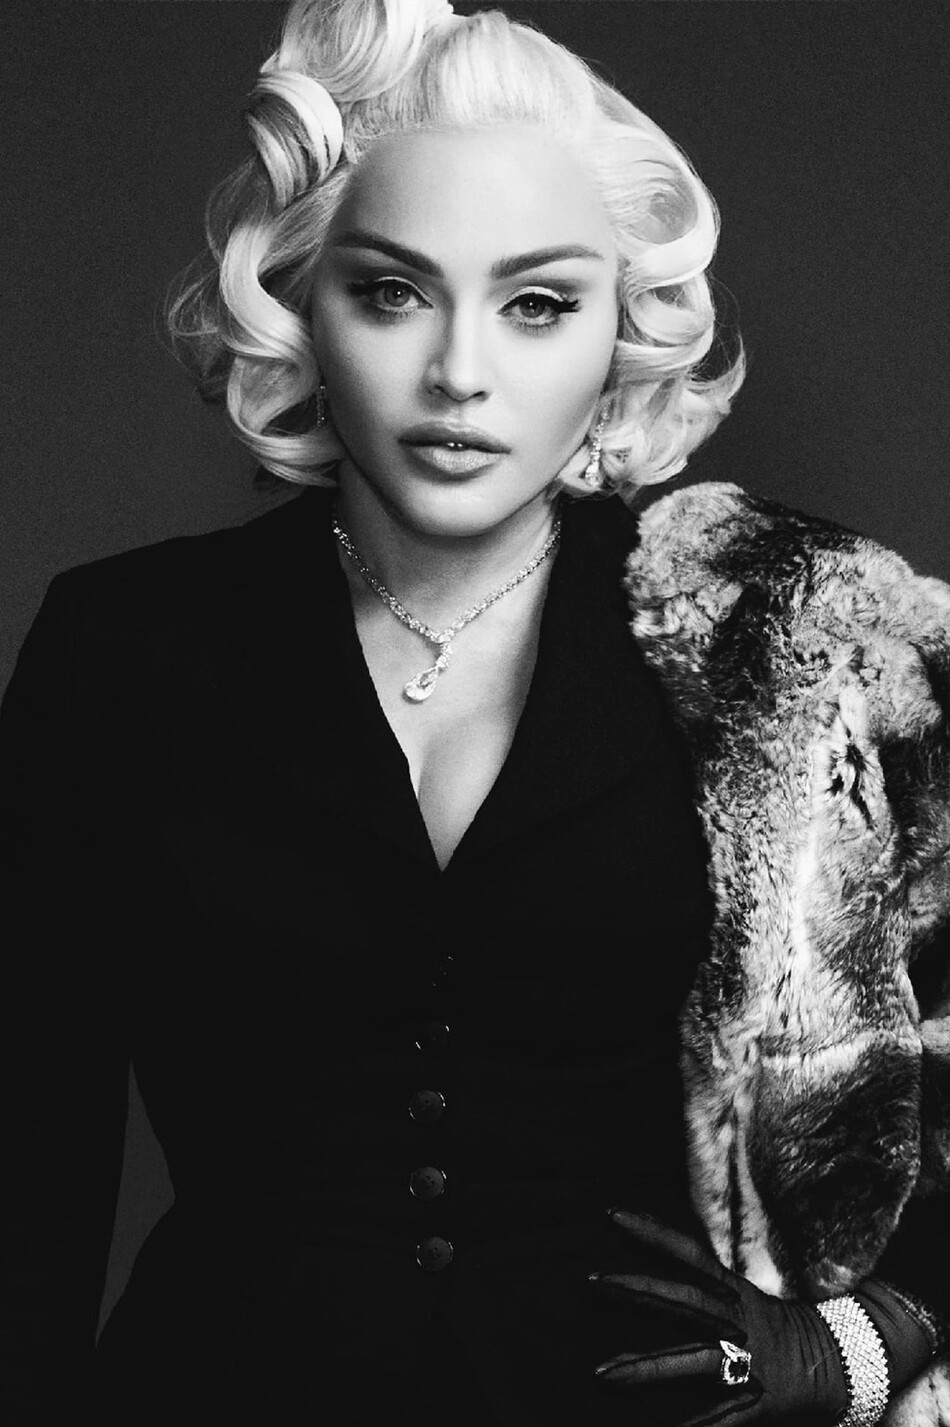 Мадонна в образе Мэрилин Монро в фотосессии для журнала V, 2021 